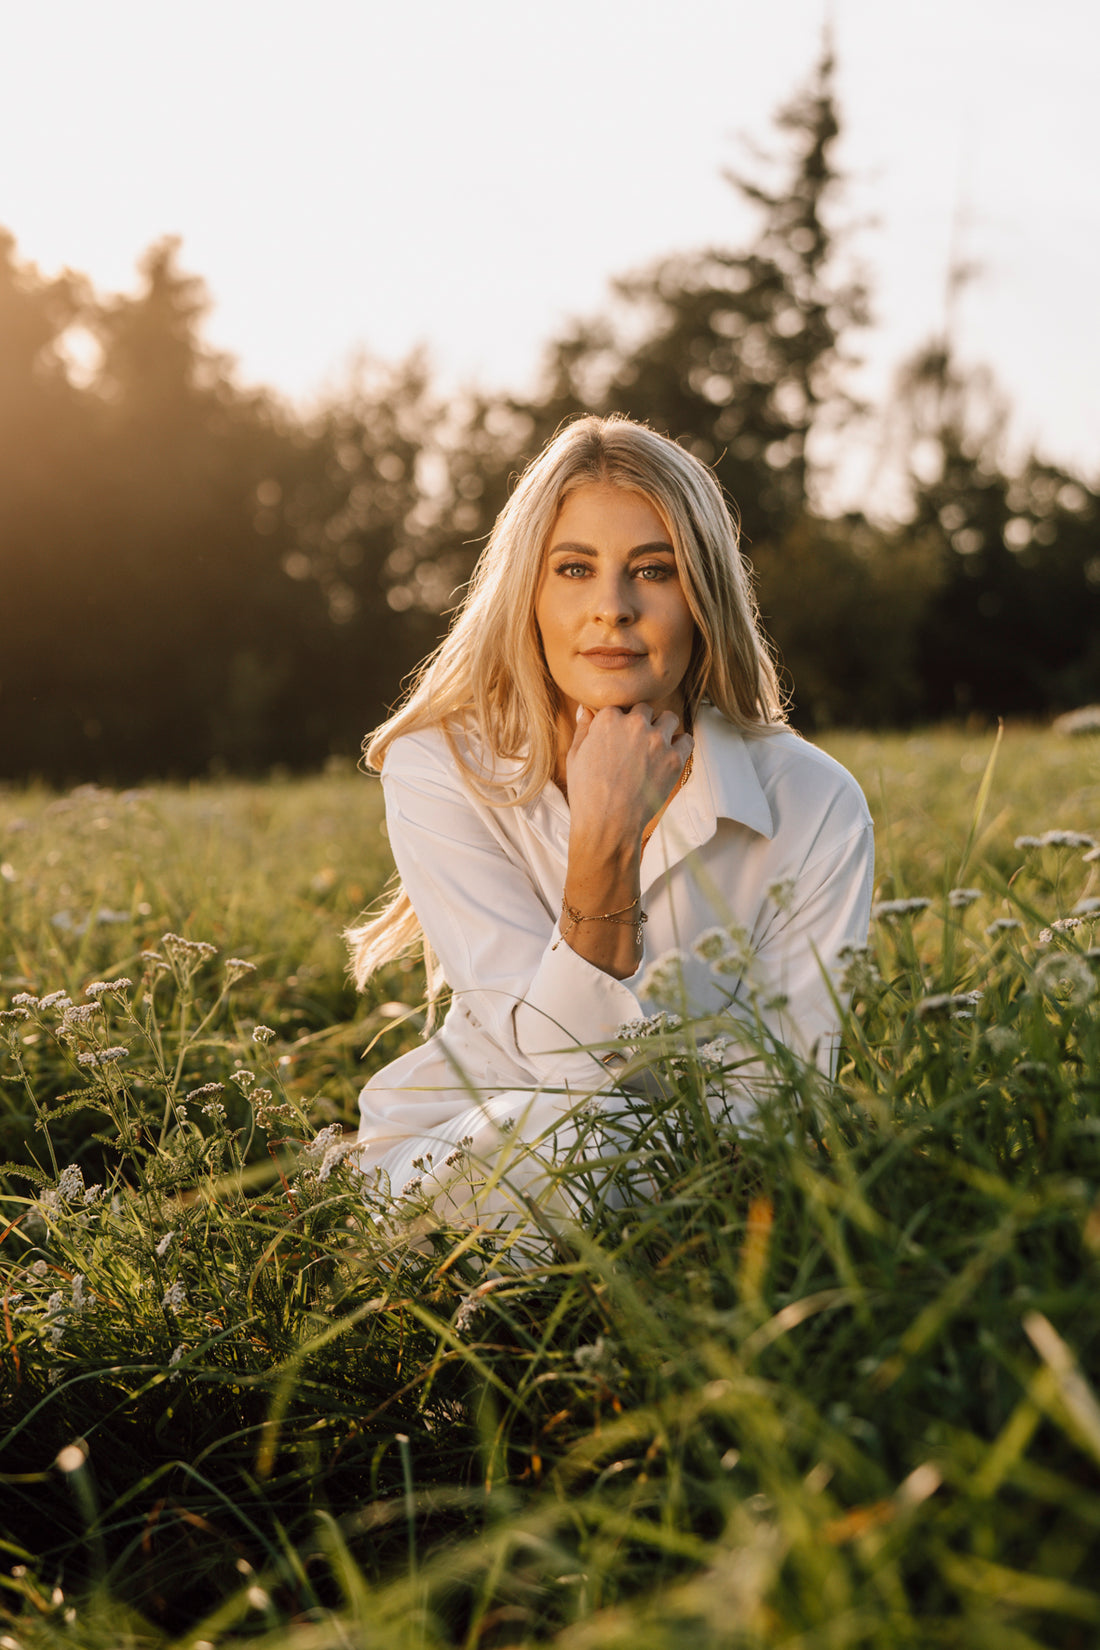 Nina Milenkovics hockt im Gras und schaut direkt in die Kamera. Sie hat offene Haare und trägt ein weißes Sommerkleid.